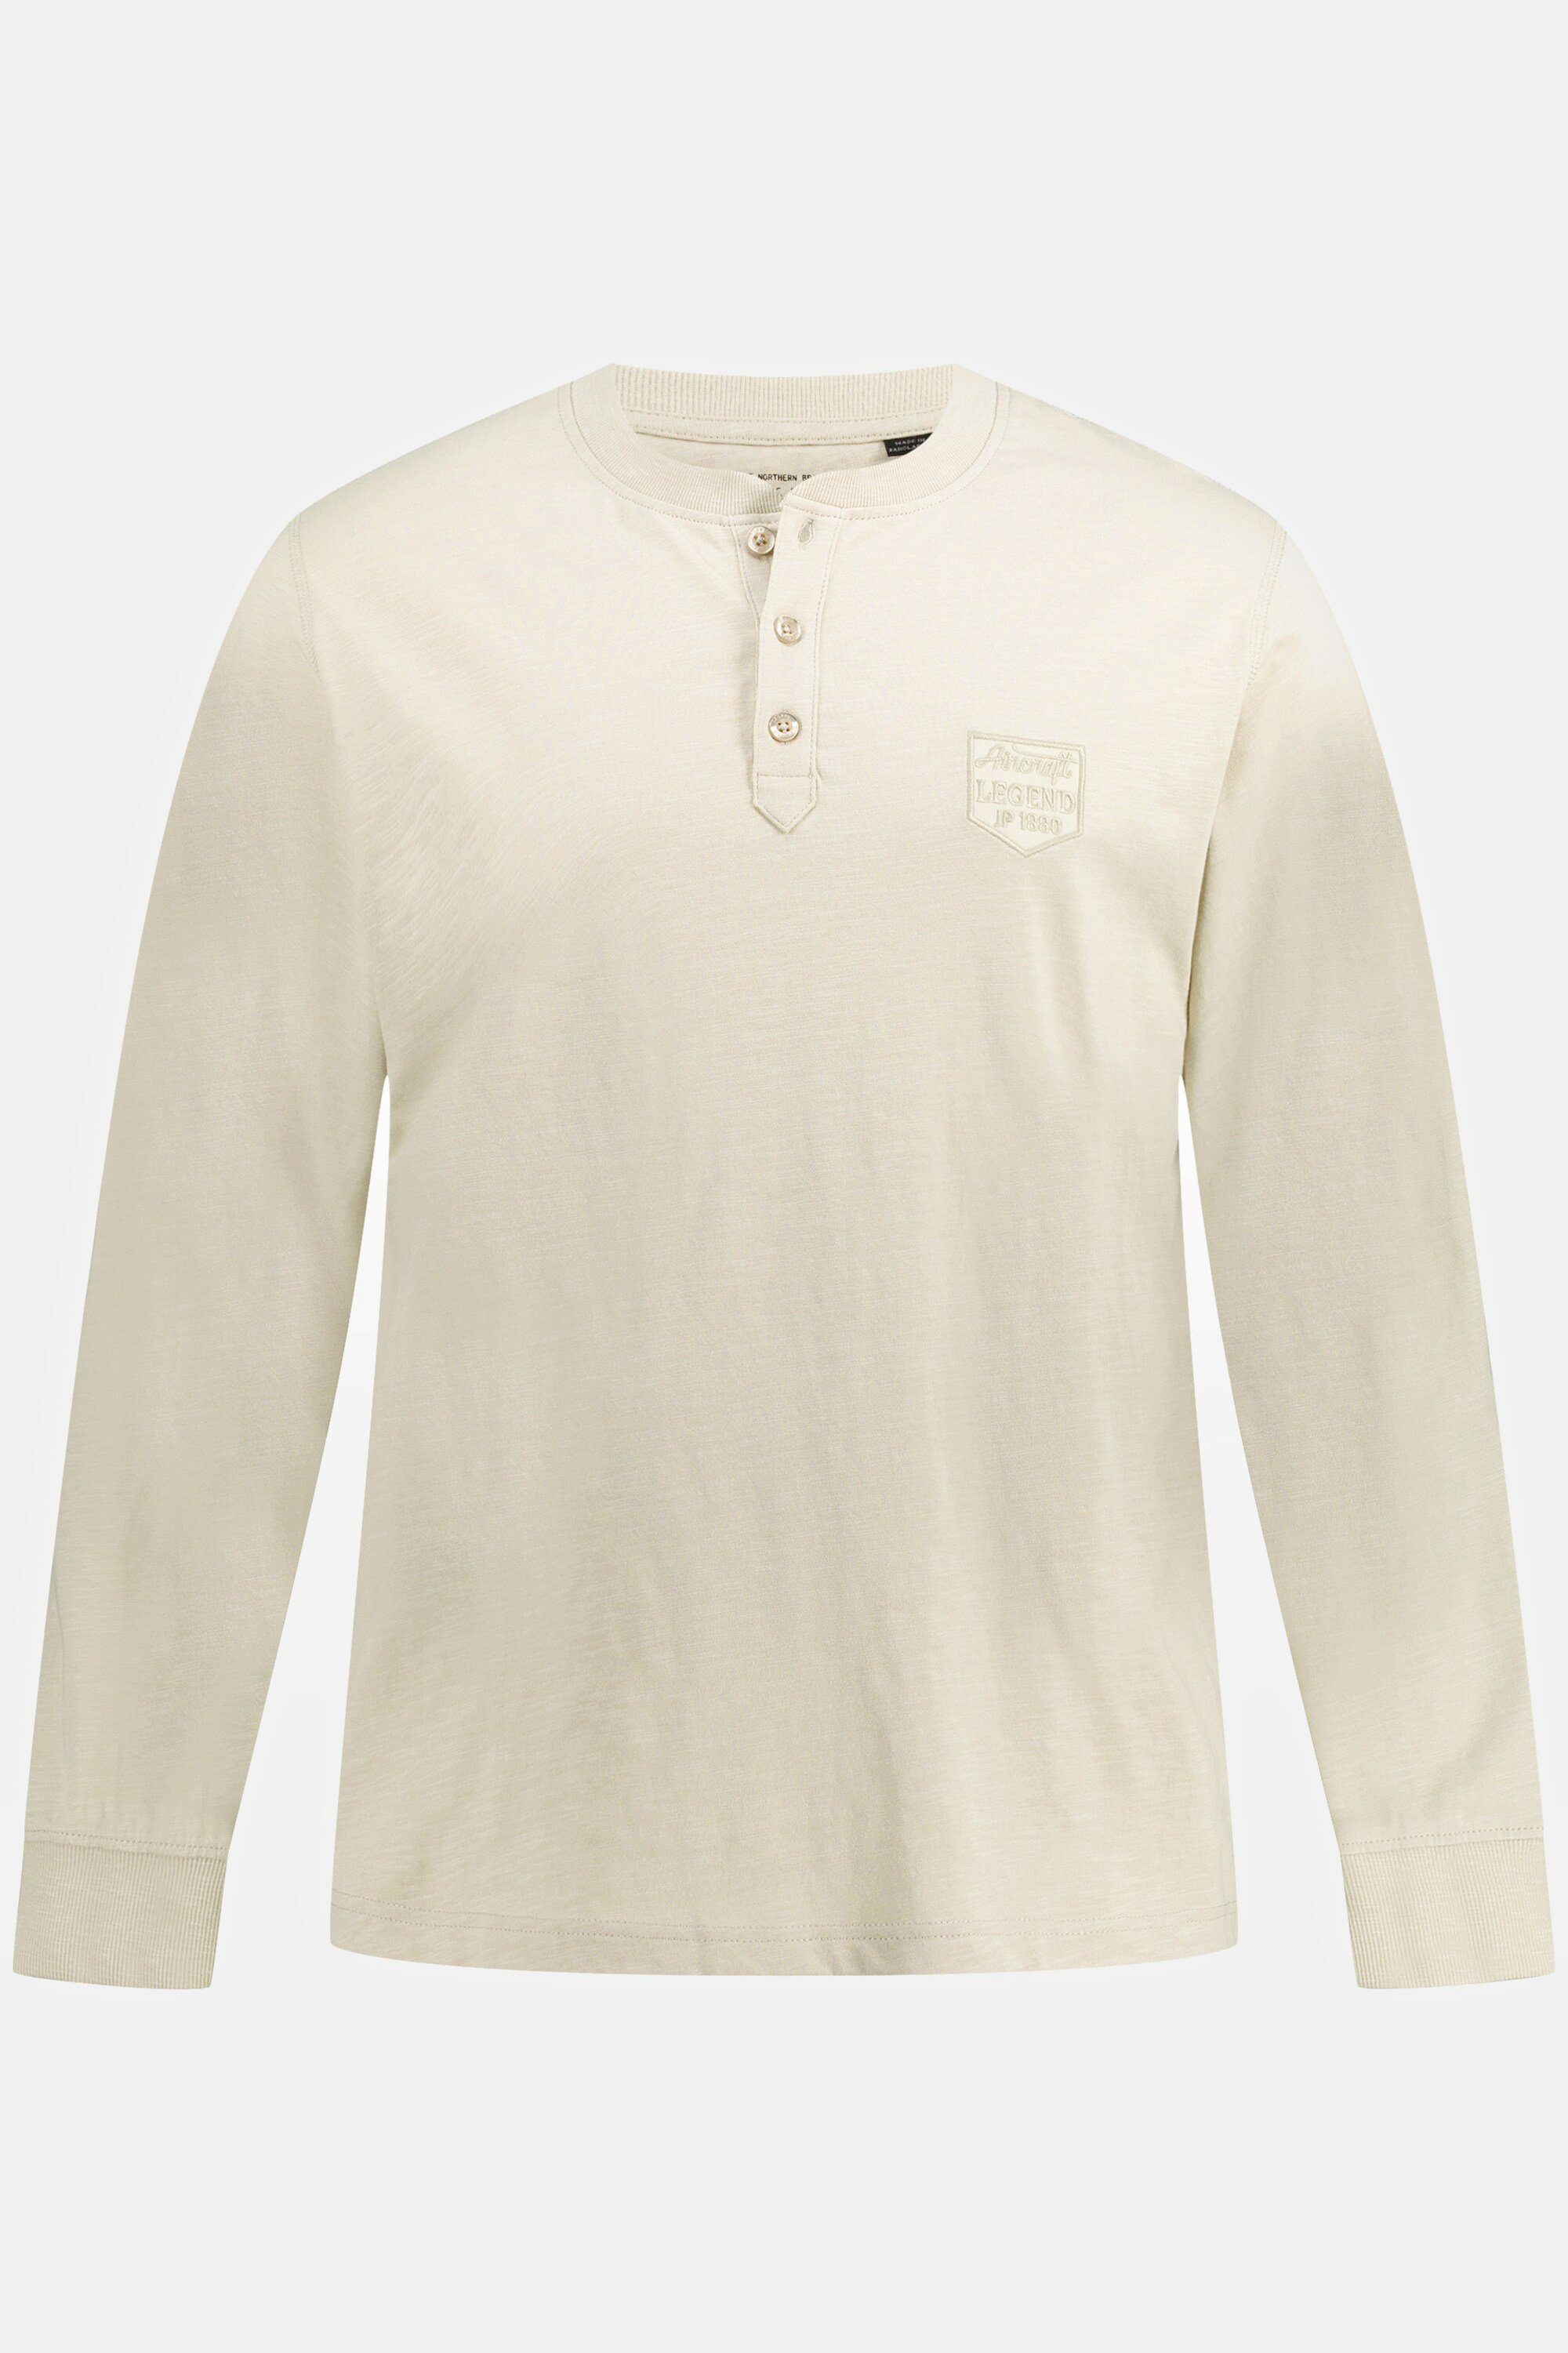 sand-beige Knopfleiste Rundhals Flammjersey JP1880 Henley Langarm T-Shirt